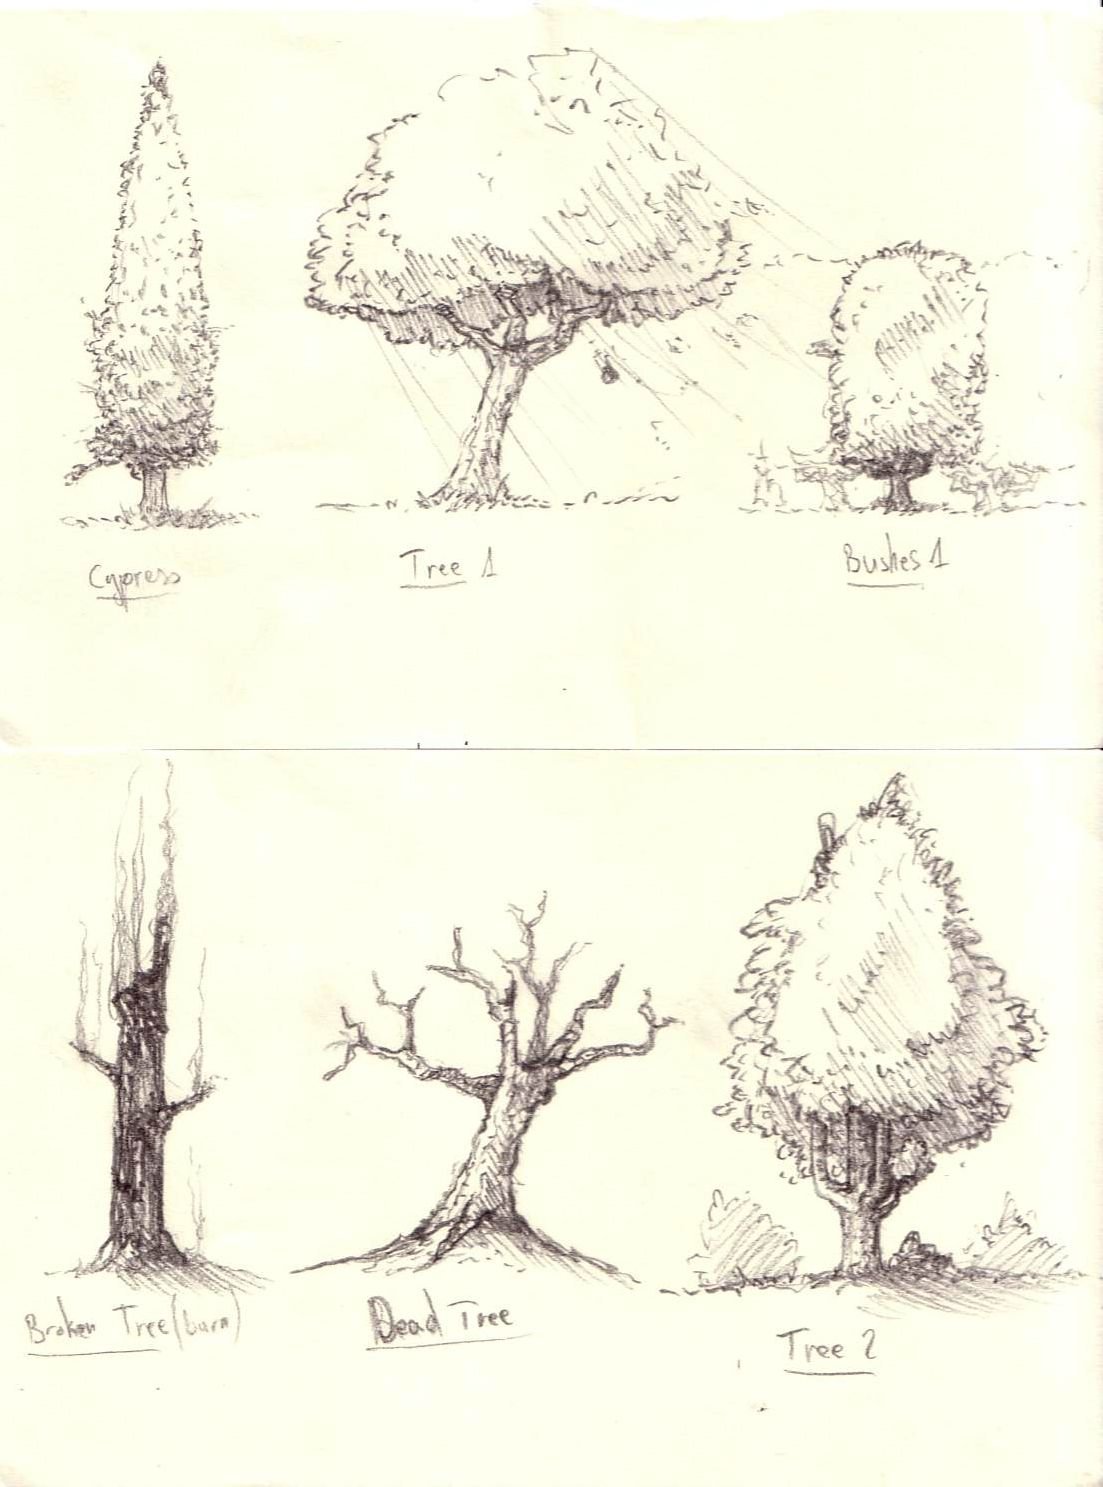 Зарисовки деревьев и кустарников